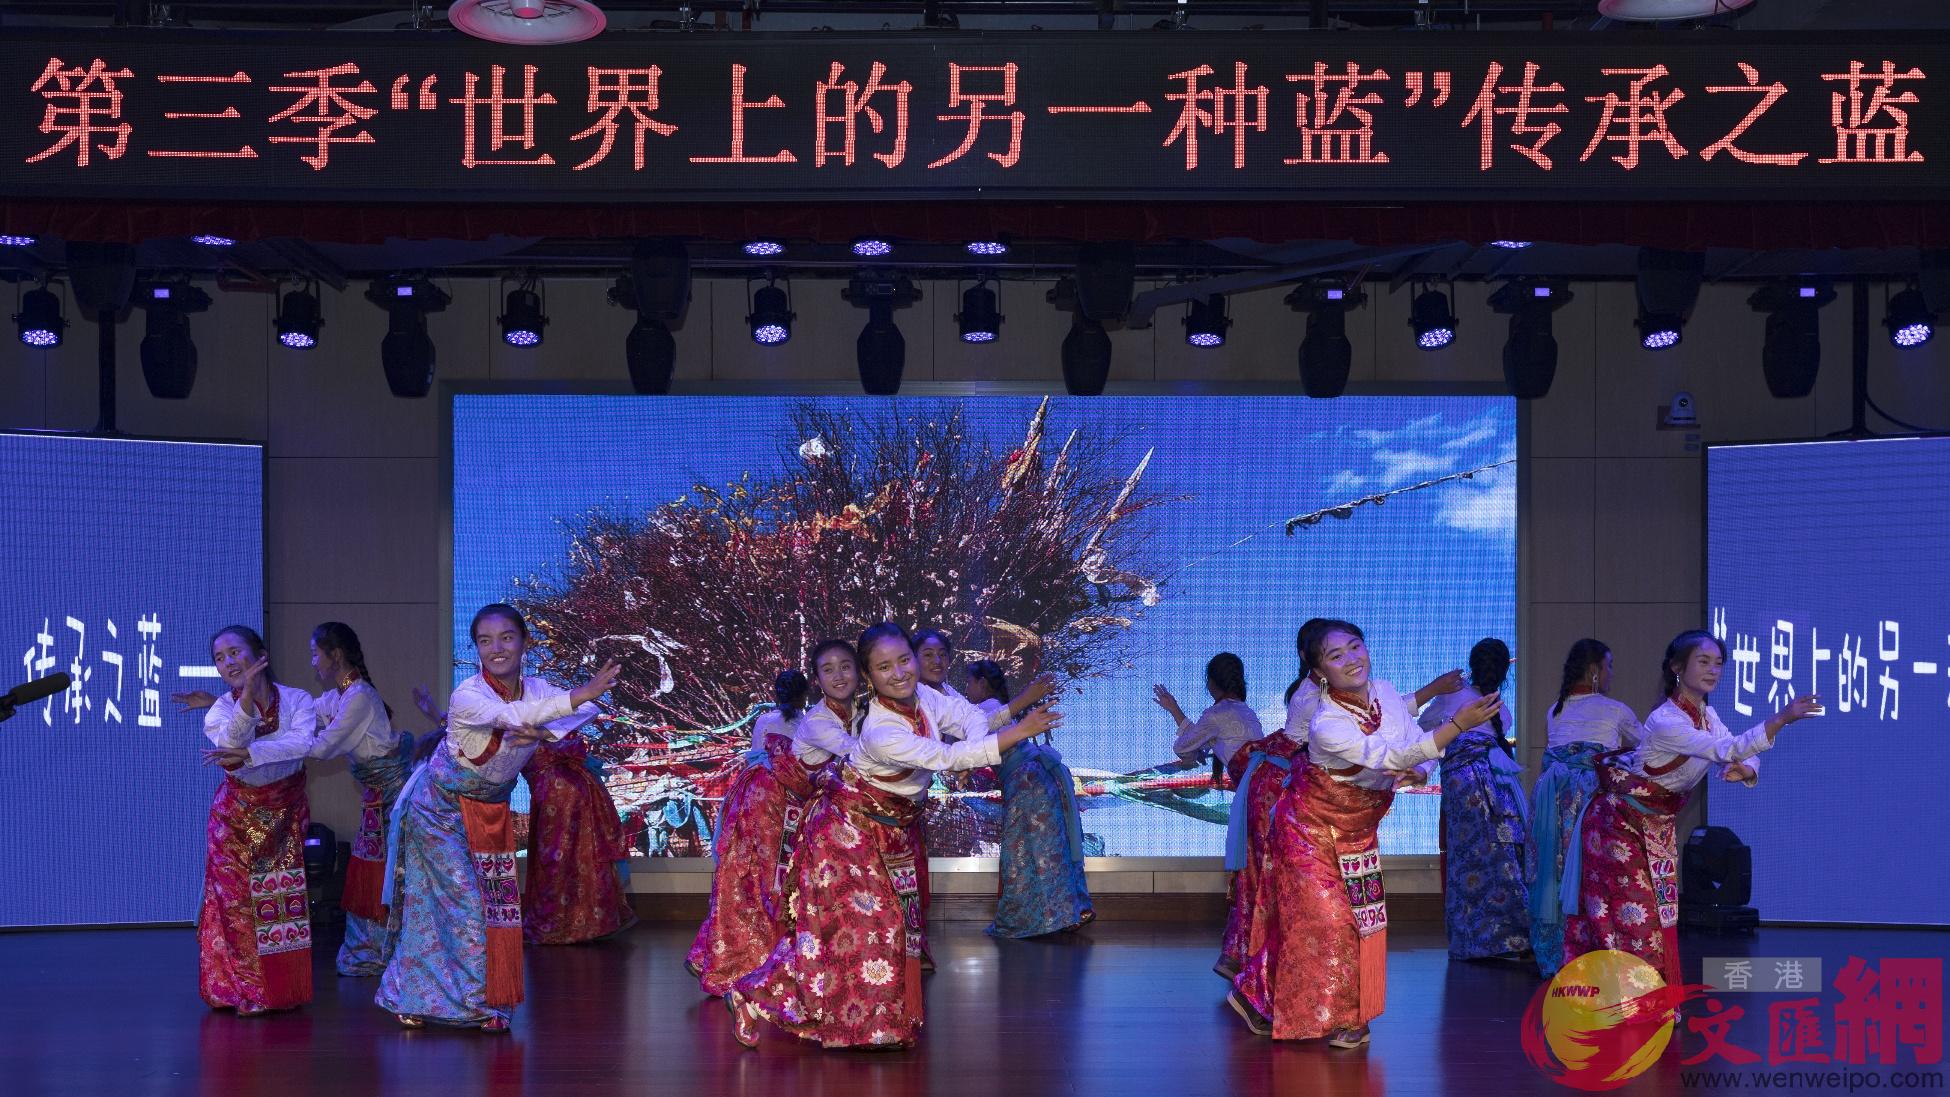 熱夢科巴藝術團正在演出高原歌舞記者 郭若溪攝